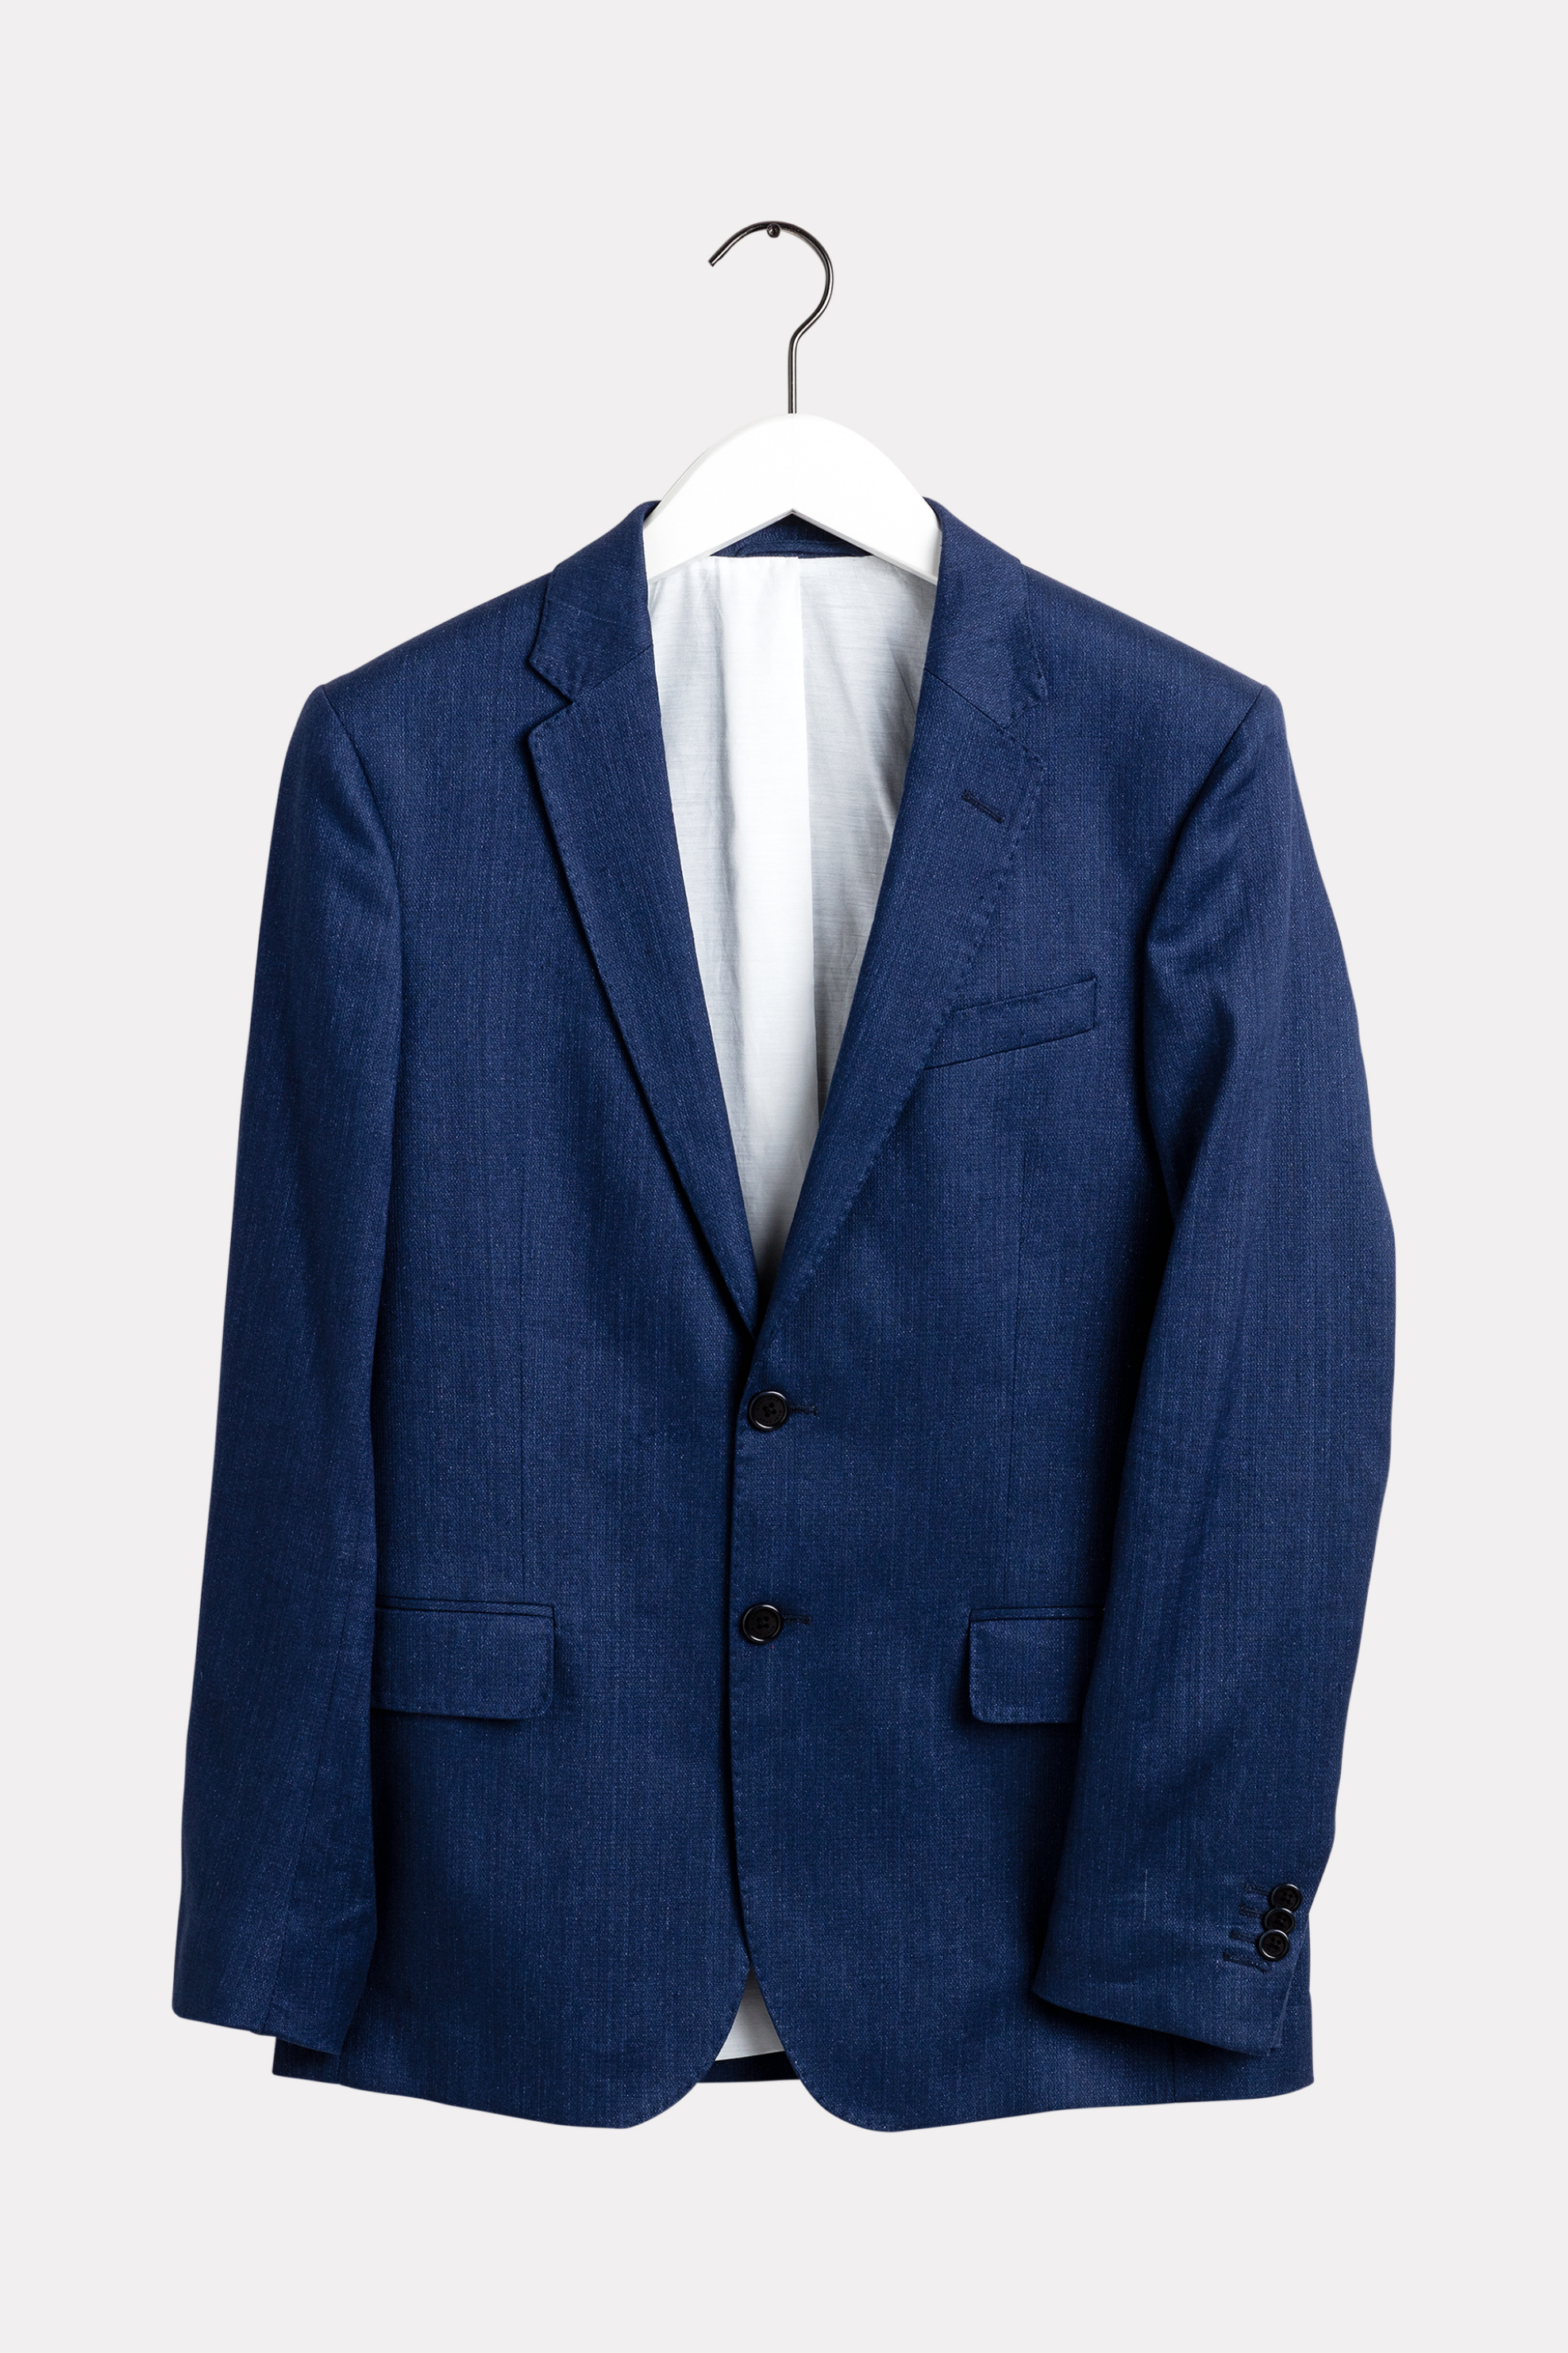 Ανδρική Μόδα > Ανδρικά Ρούχα > Ανδρικά Σακάκια > Ανδρικά Σακάκια Casual Gant ανδρικό λινό σακάκι με τσέπη στο στήθος Slim Fit - 7705114 Μπλε Σκούρο